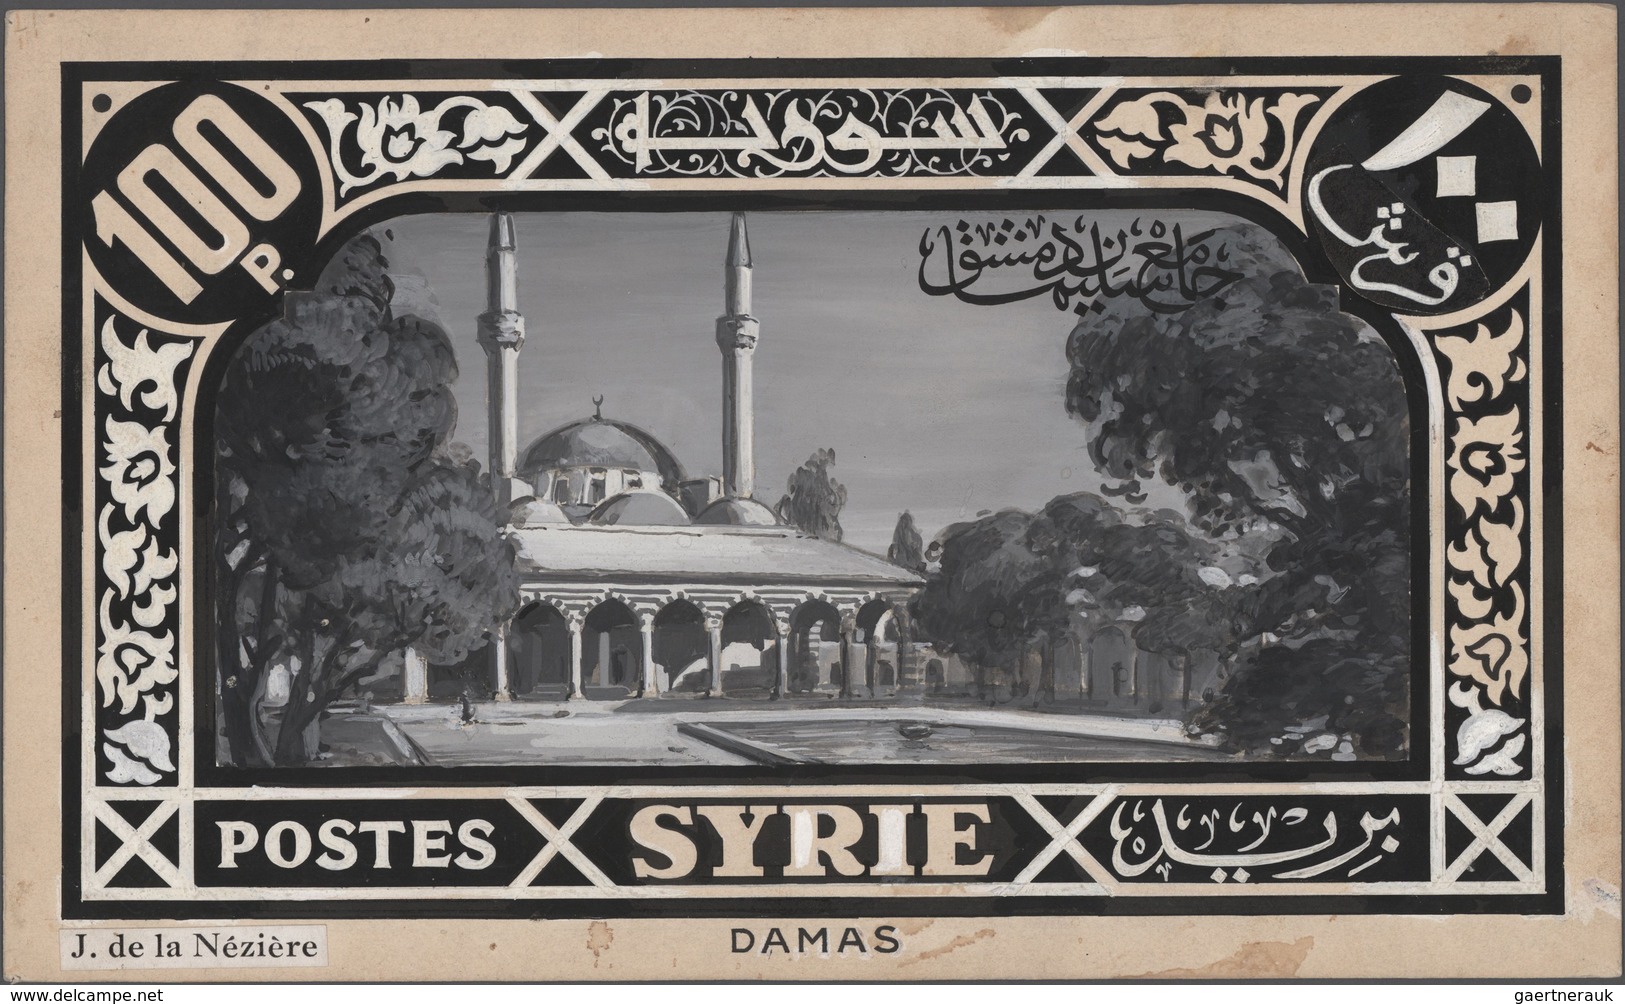 Syrien: 1925/1934, Definitives "Pictorials", designer "Jean de la Neziere", group of 15 large-sized